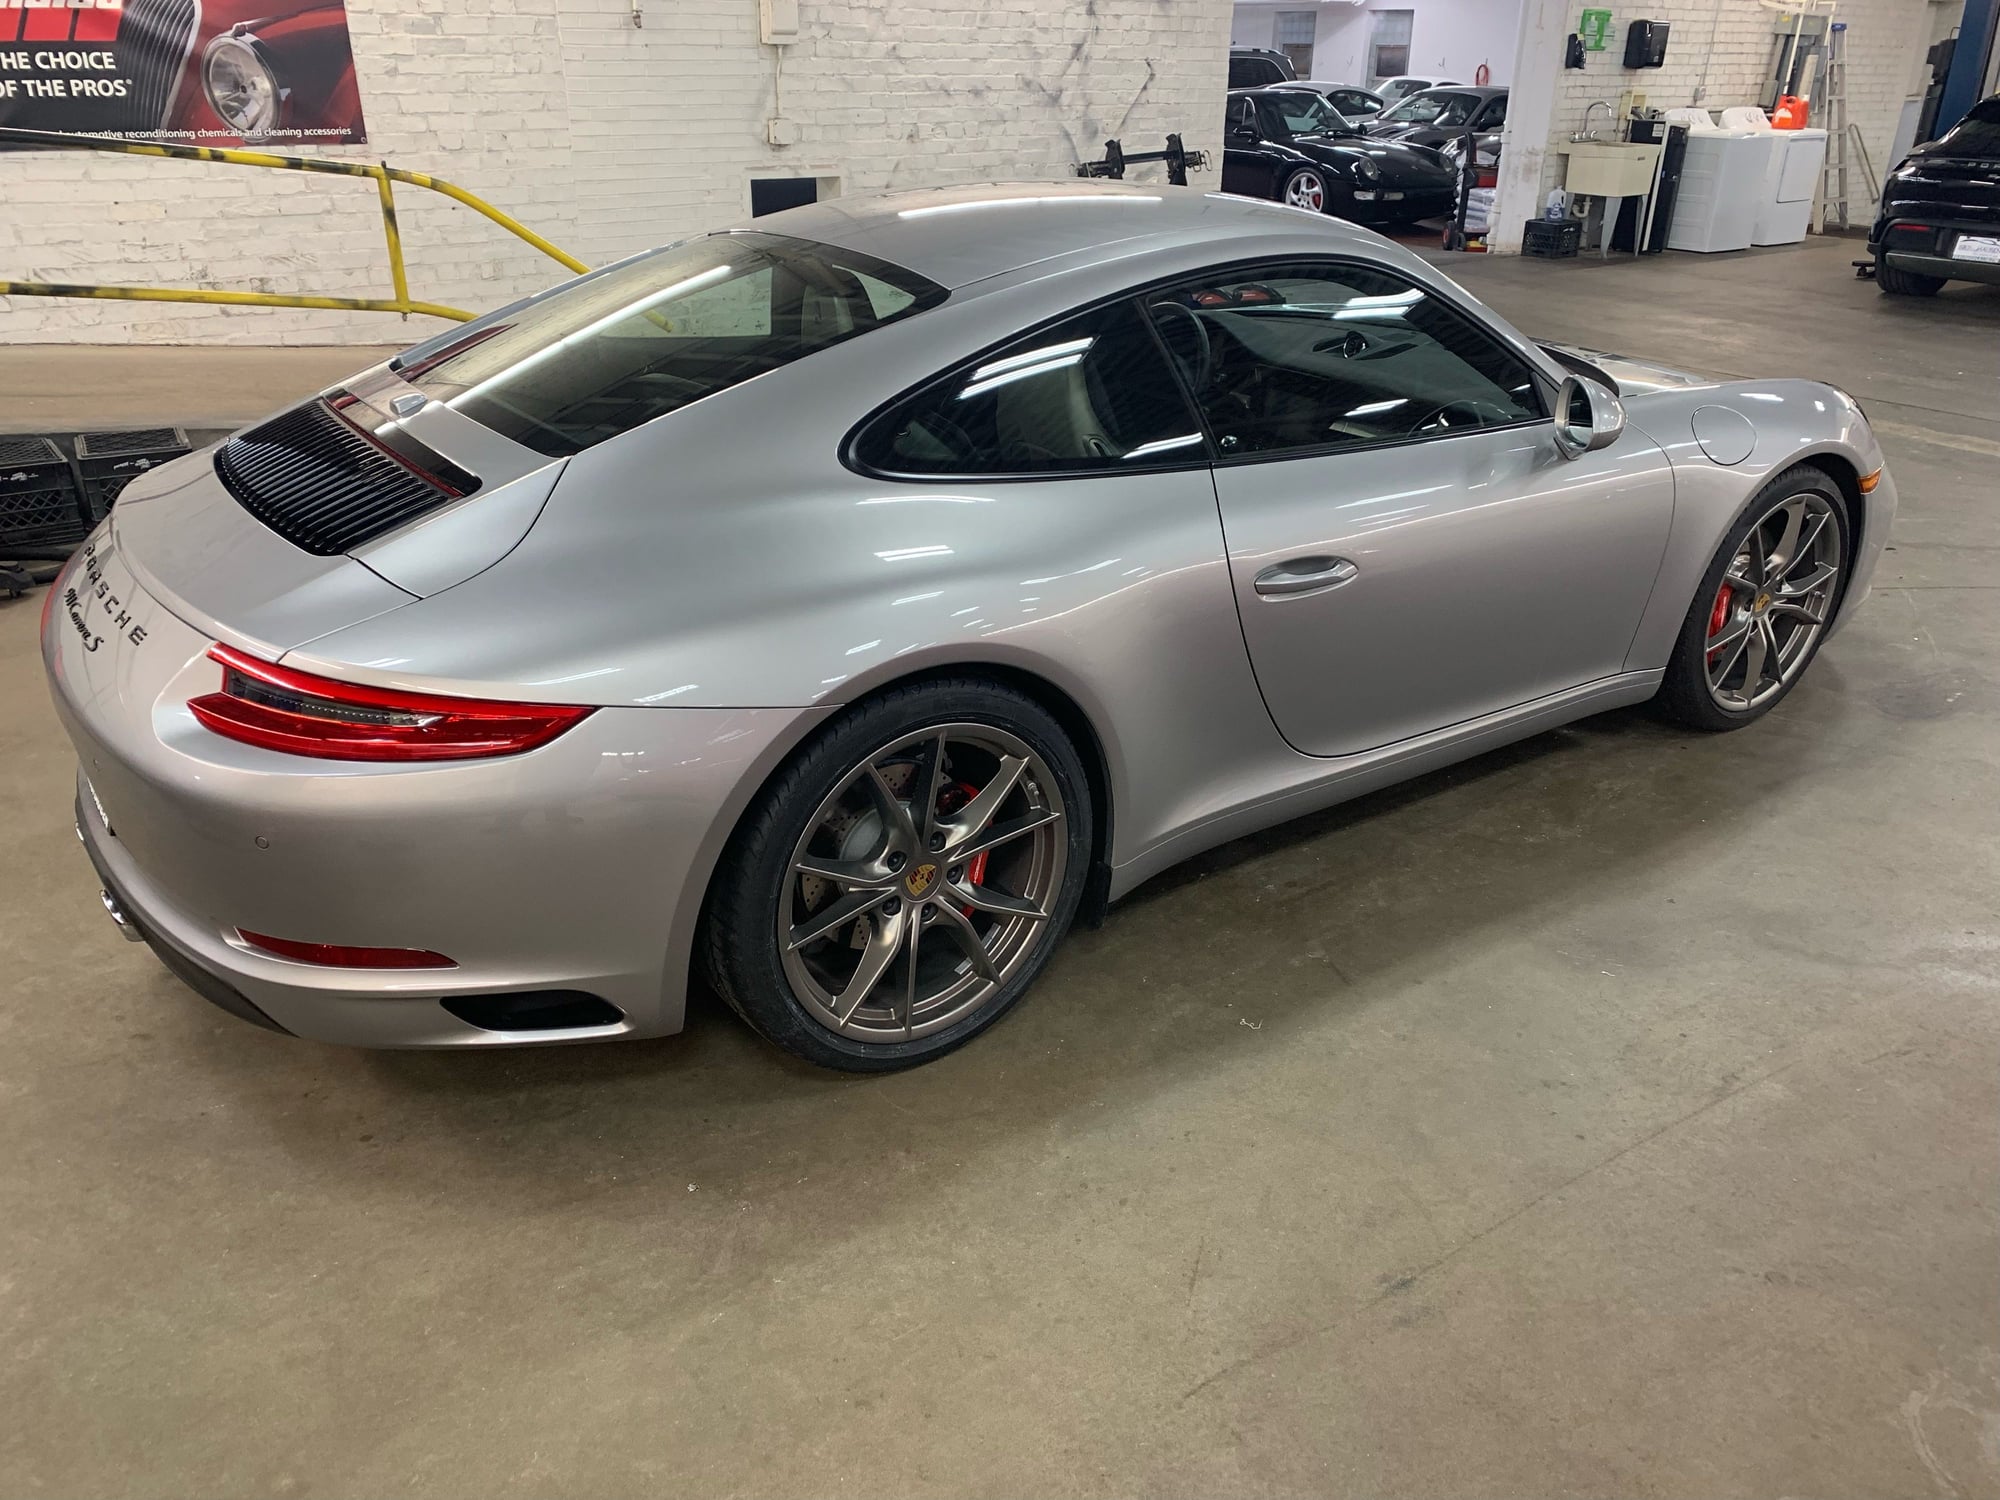 2019 Porsche 911 - FS:  2019 Porsche Carrera S - manual, unique build, CPO till 5/2025 or 5/2026 - Used - VIN WP0AB2A98KS115461 - 5,200 Miles - 6 cyl - 2WD - Manual - Coupe - Silver - Mooresville, NC 28117, United States